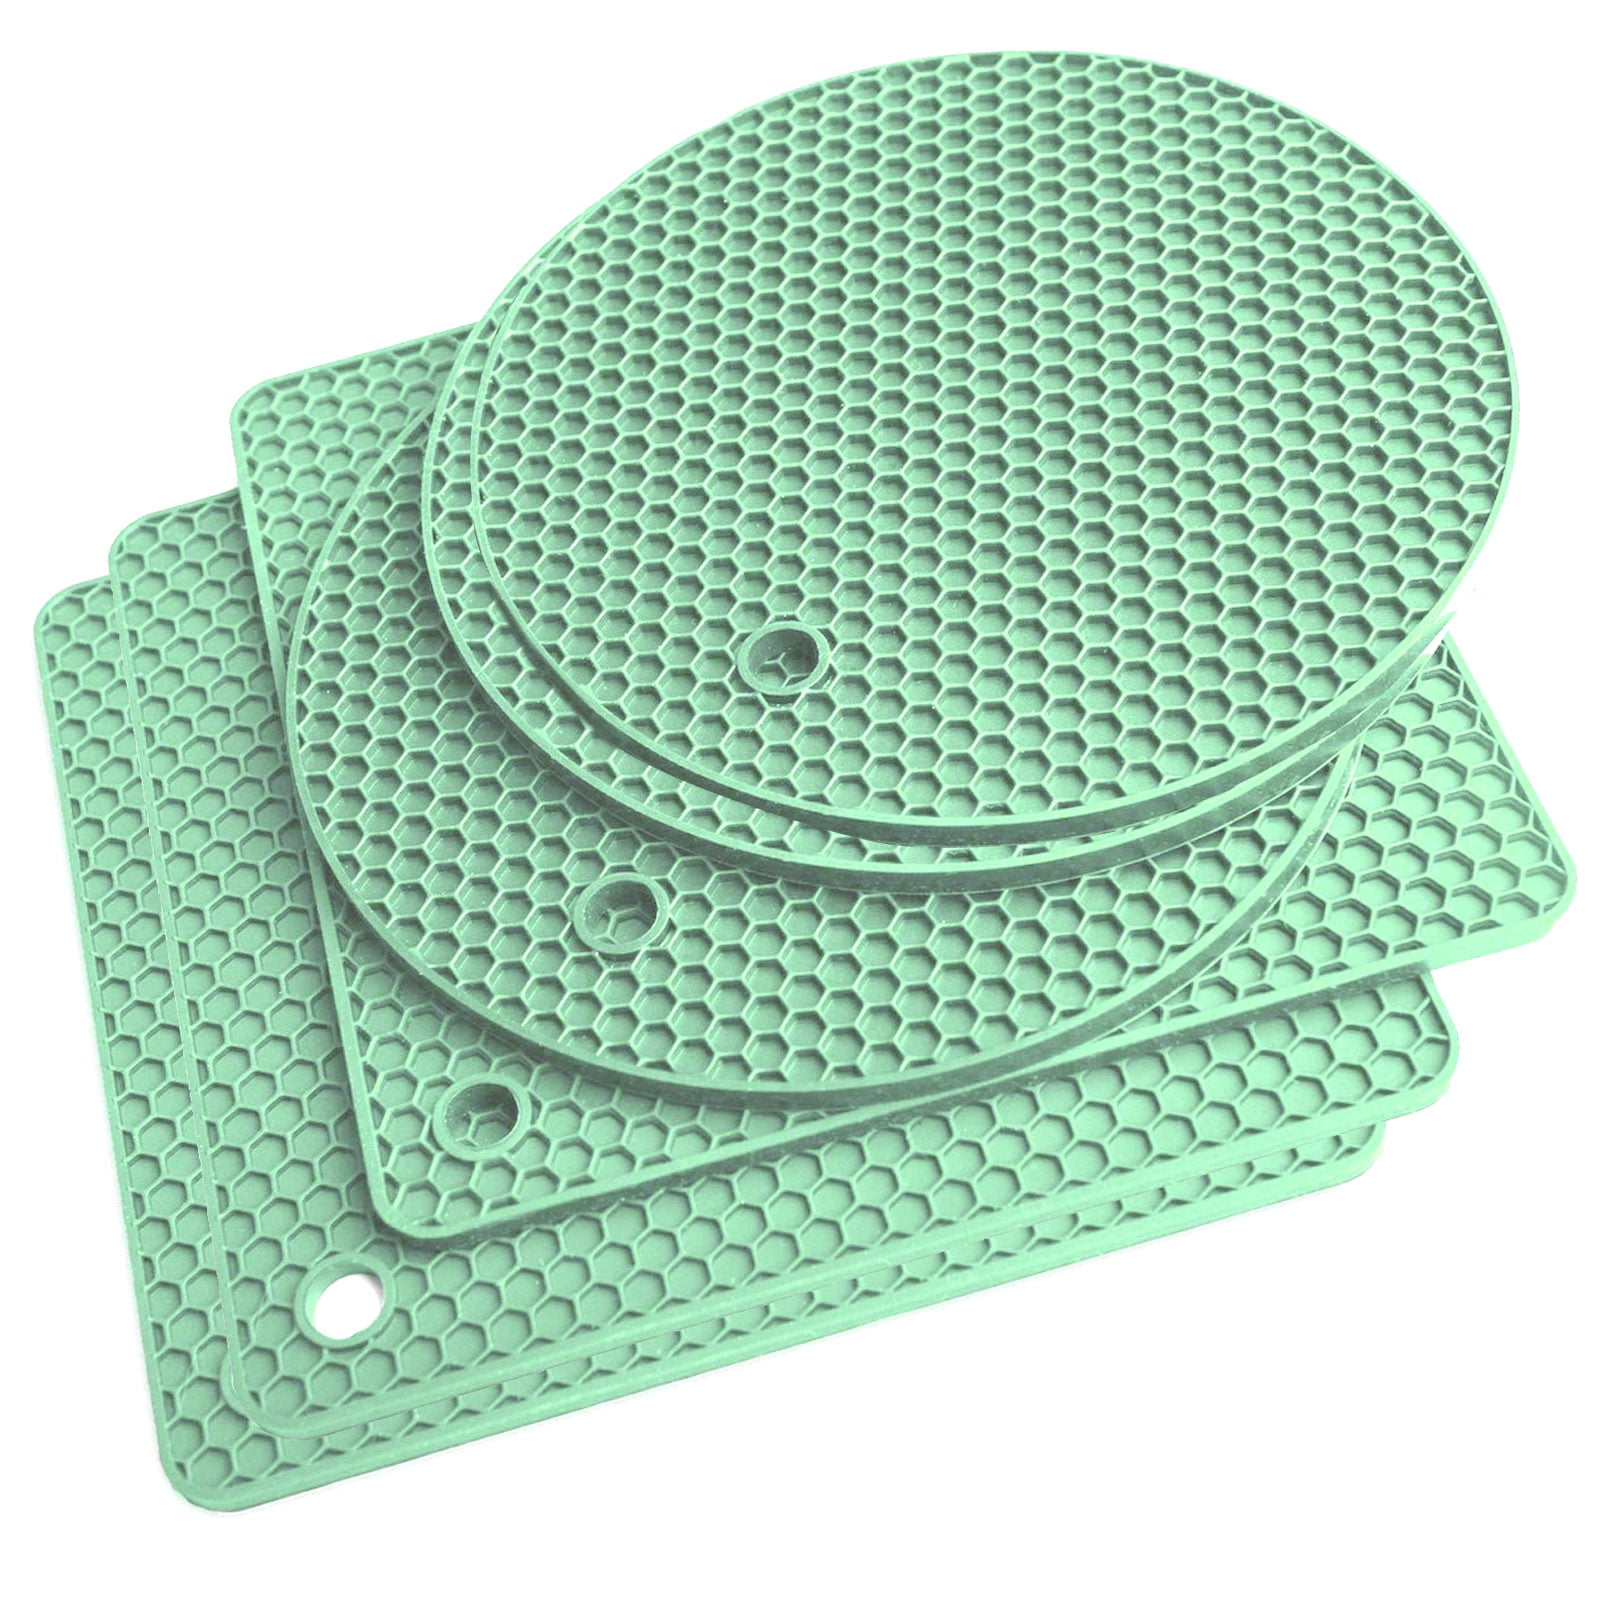 FoamEra  Pot Holder (Hot Pads) in Green Geometric Design [Pair]